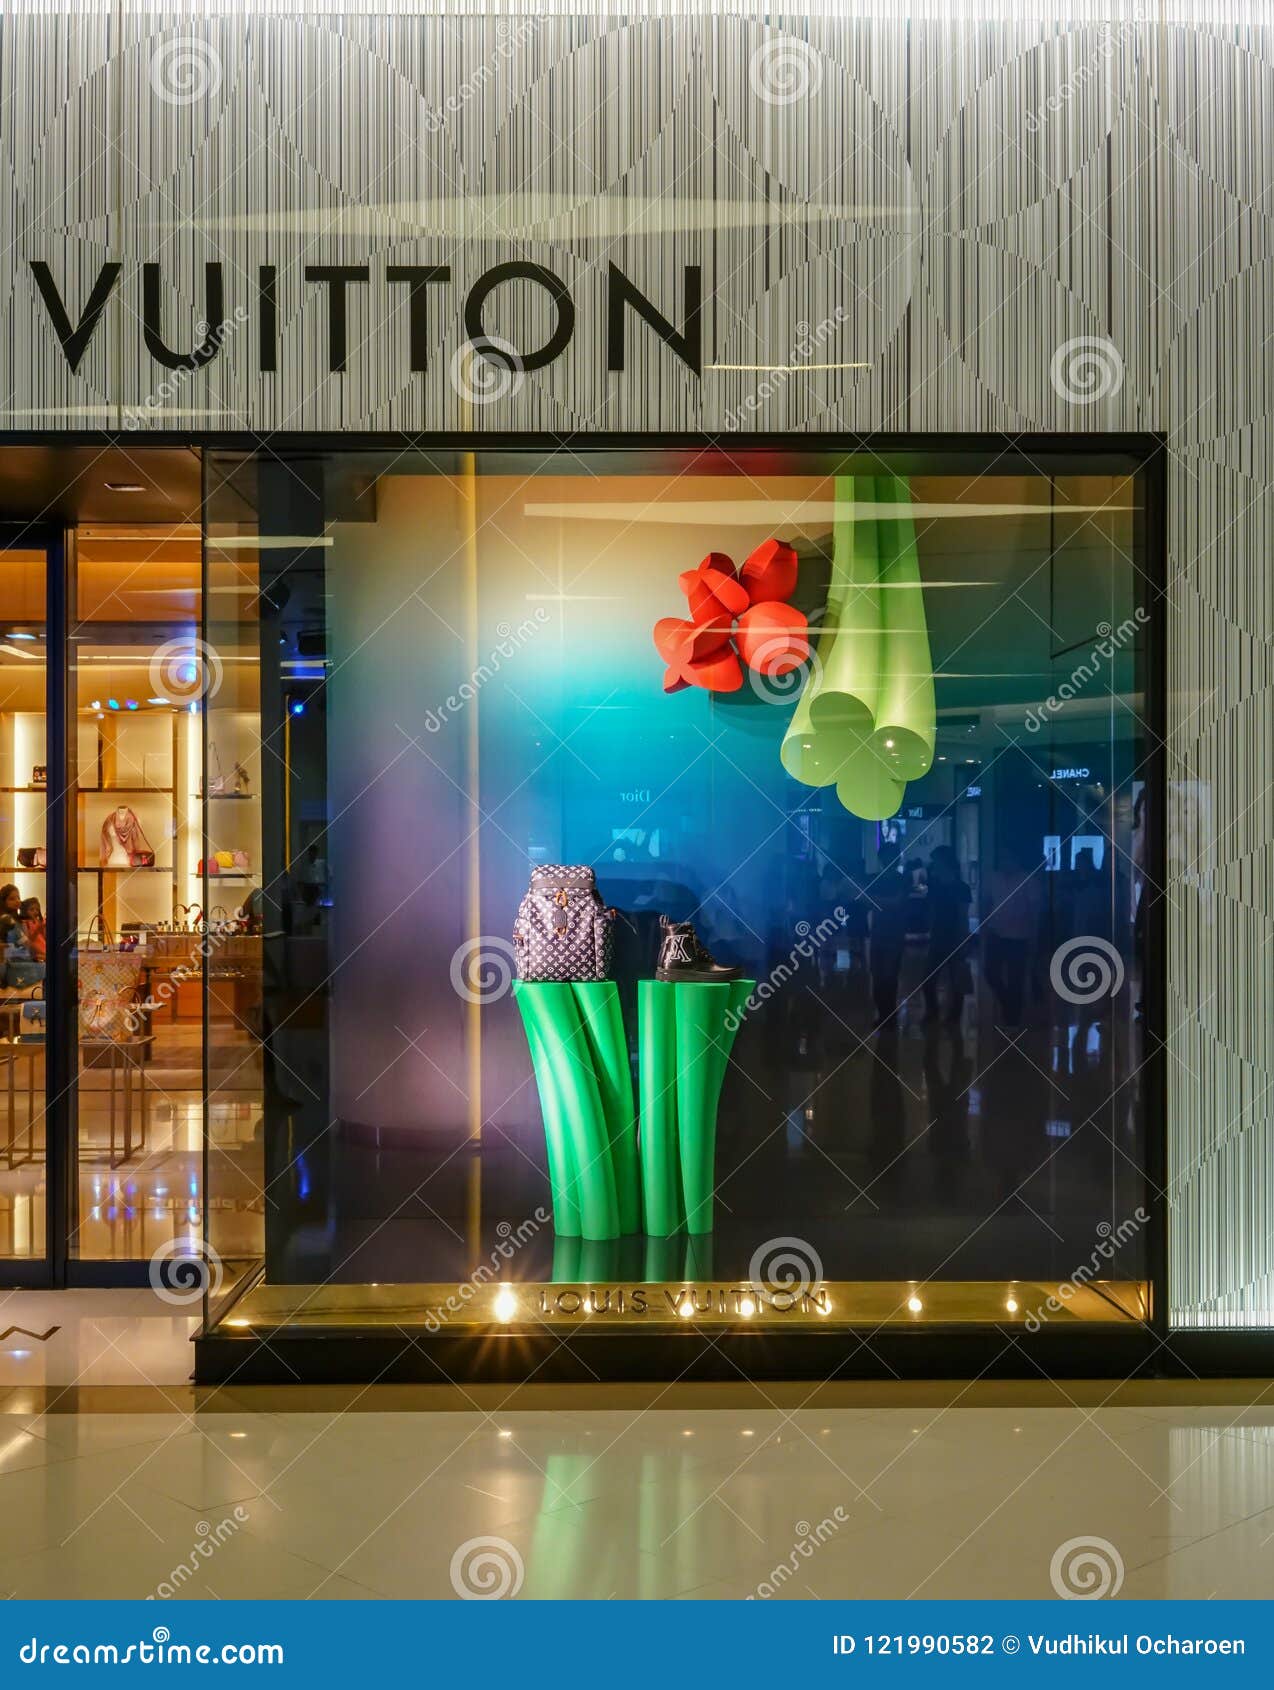 Louis Vuitton Shop At Siam Paragon, Bangkok, Thailand, May 9, 2018